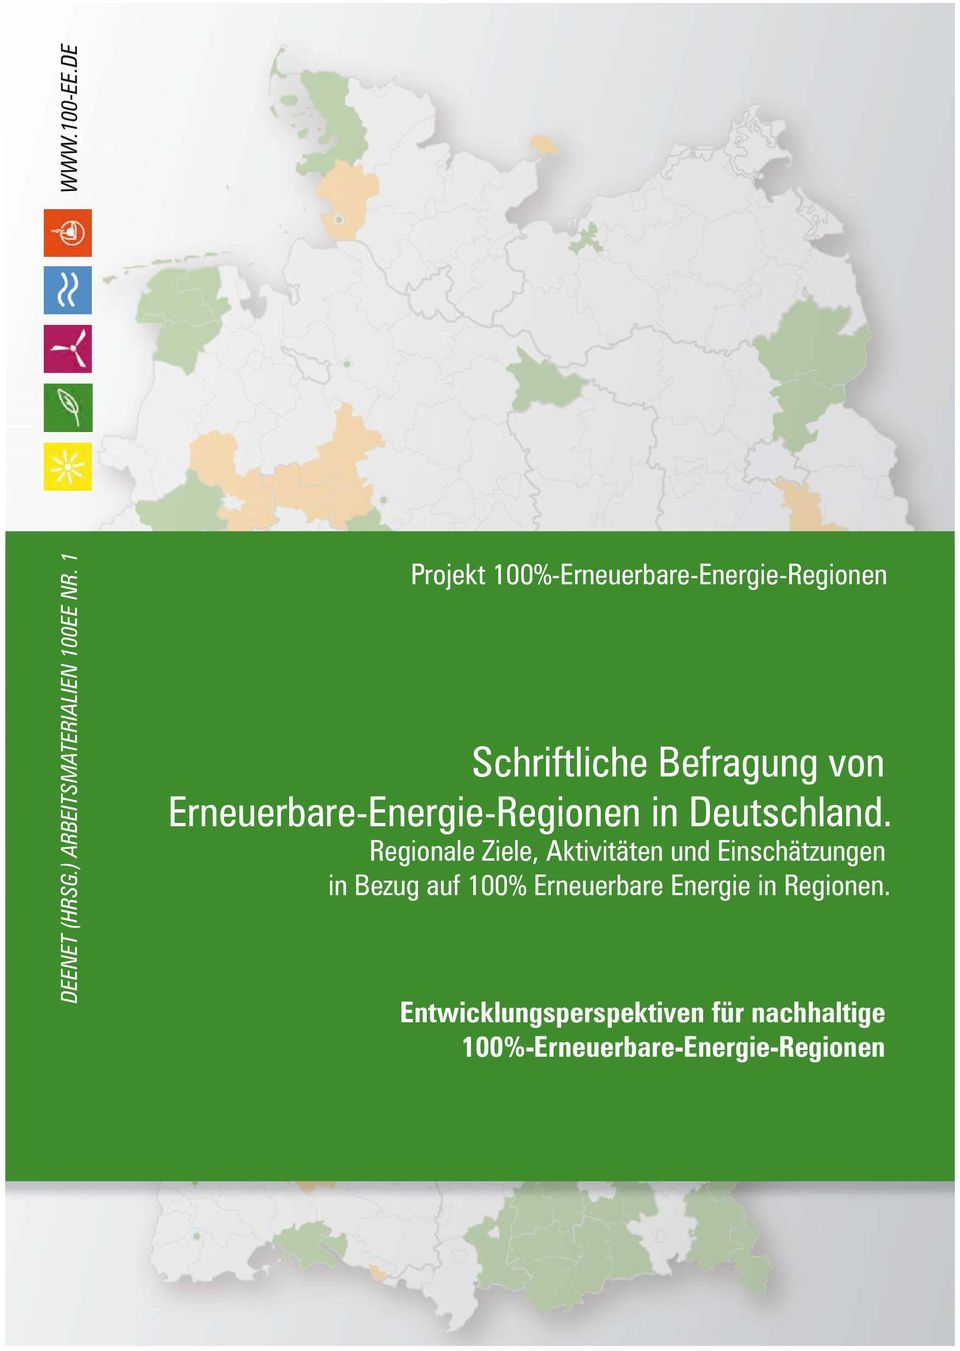 Erneuerbare-Energie-Regionen in Deutschland.